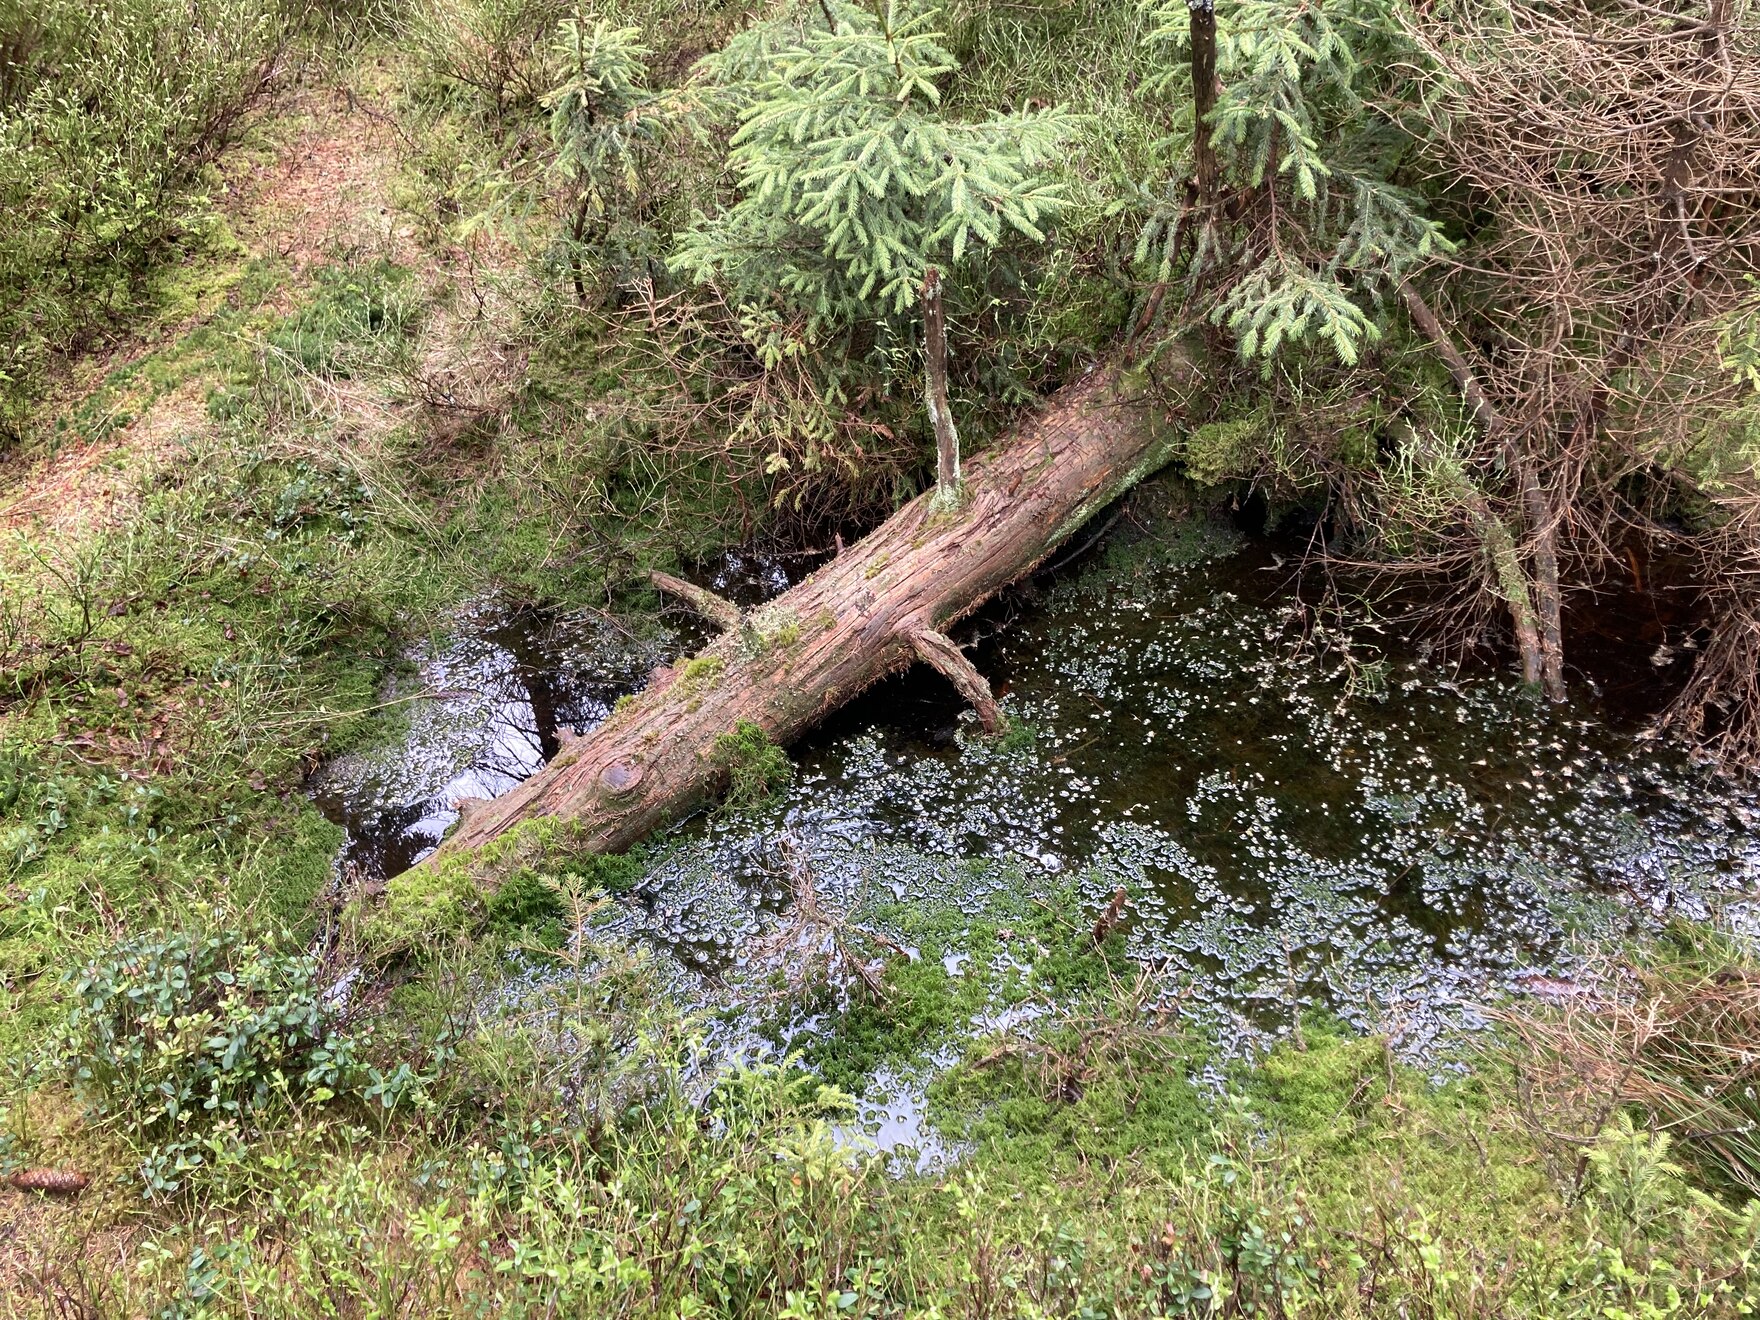 Das Bild zeigt einen mit Wasser gefüllten Graben im Moor Carlsfeld, umgeben von Moorvegetation (Torfmoose, Gräser, kleine Fichten). Quer im Graben liegt ein abgestorbener Baum.